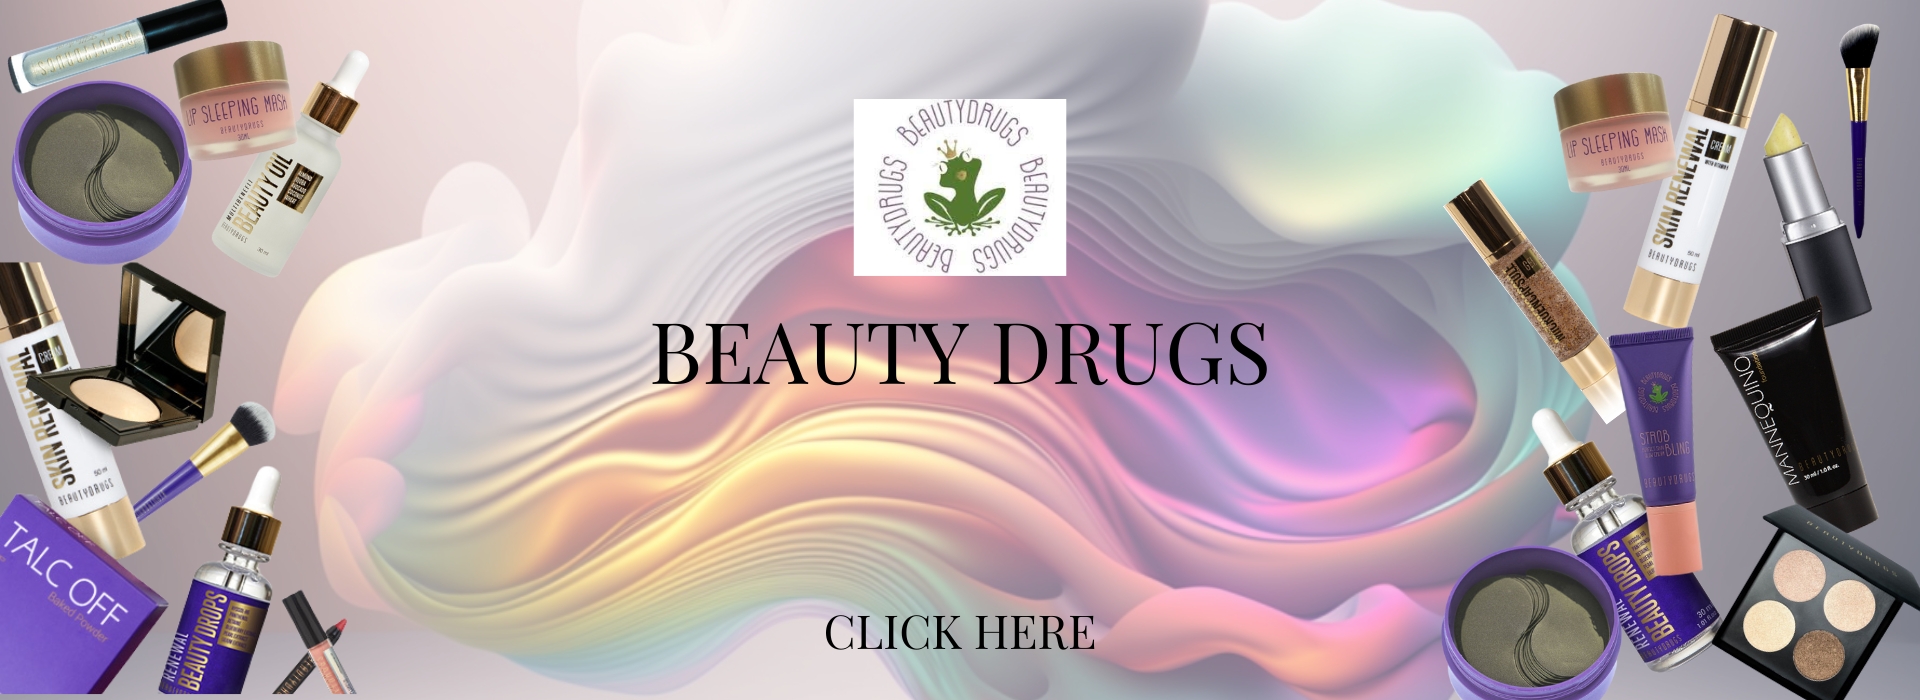 Beauty drugs